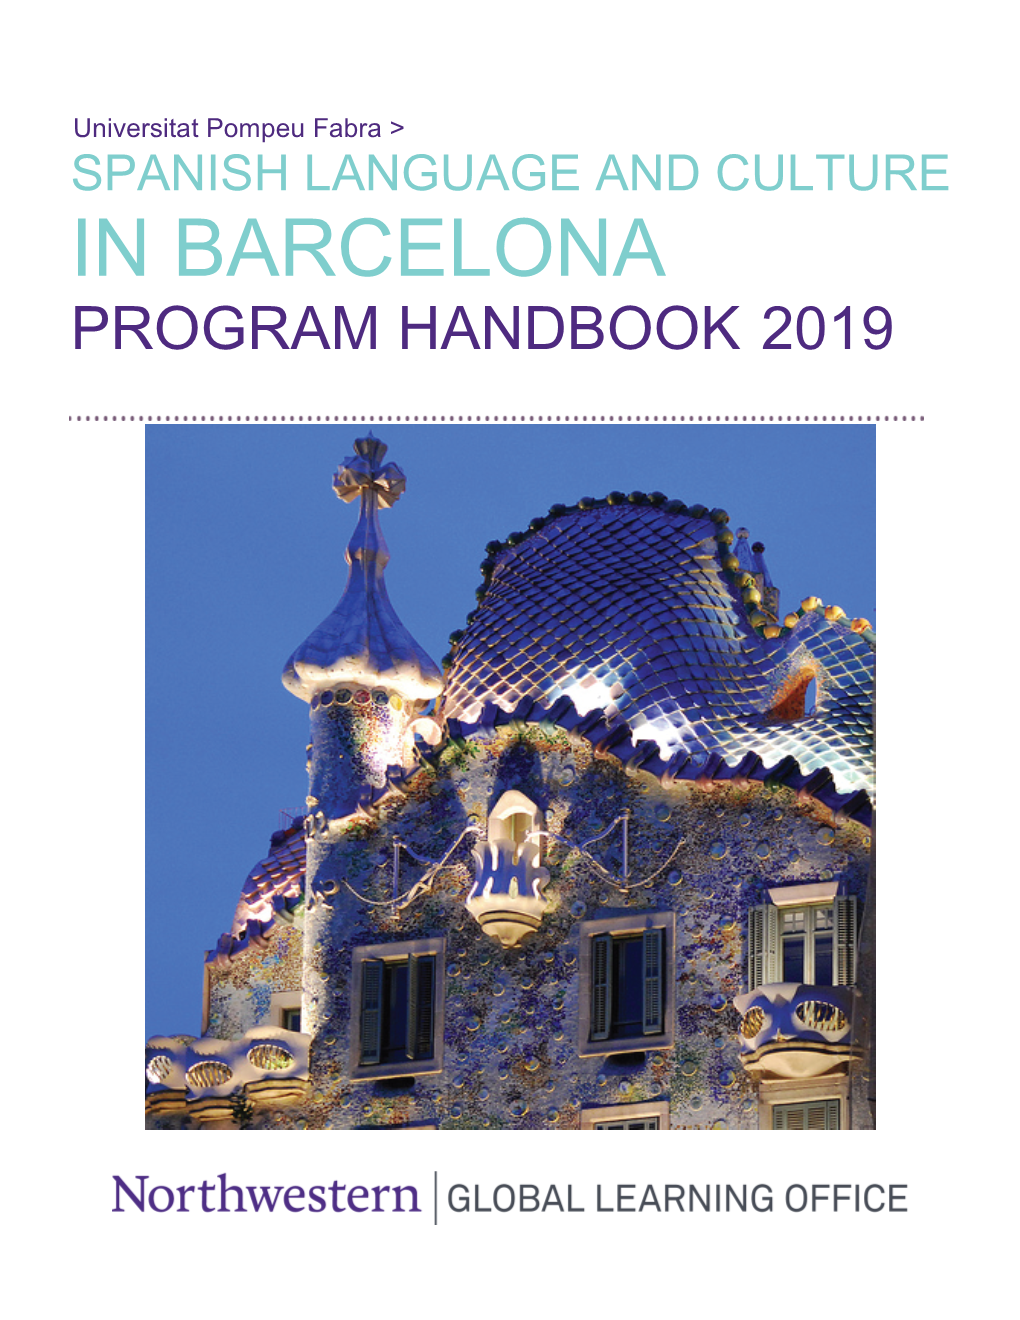 Program Handbook BCN SUMMER 2019